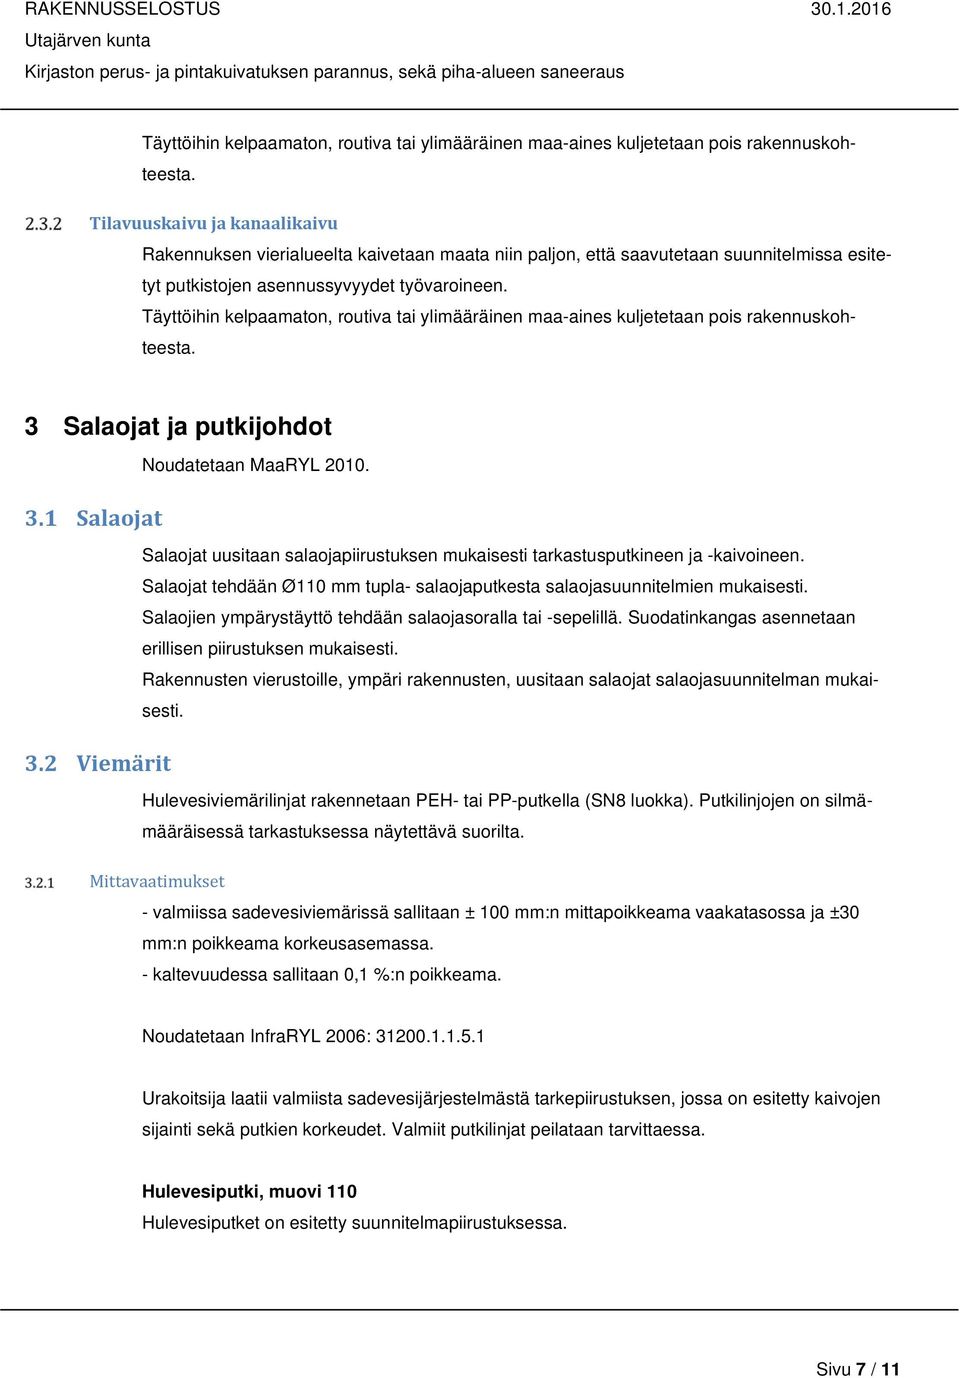 1 Salaojat 3.2 Viemärit Noudatetaan MaaRYL 2010. Salaojat uusitaan salaojapiirustuksen mukaisesti tarkastusputkineen ja -kaivoineen.